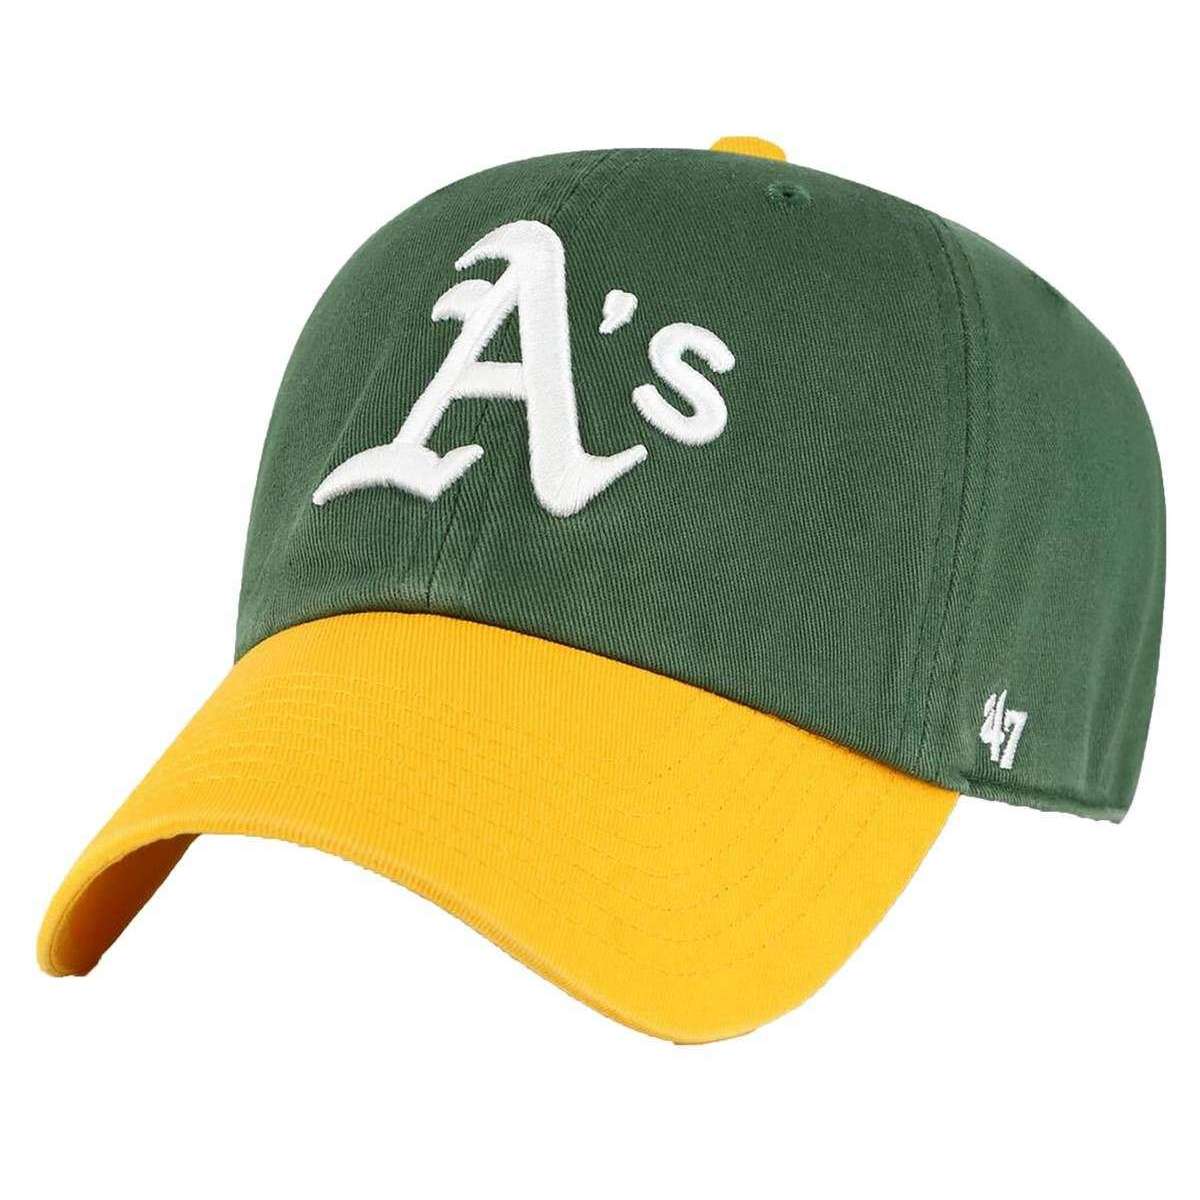 Men's Baseball Caps, Men's Hats Brands